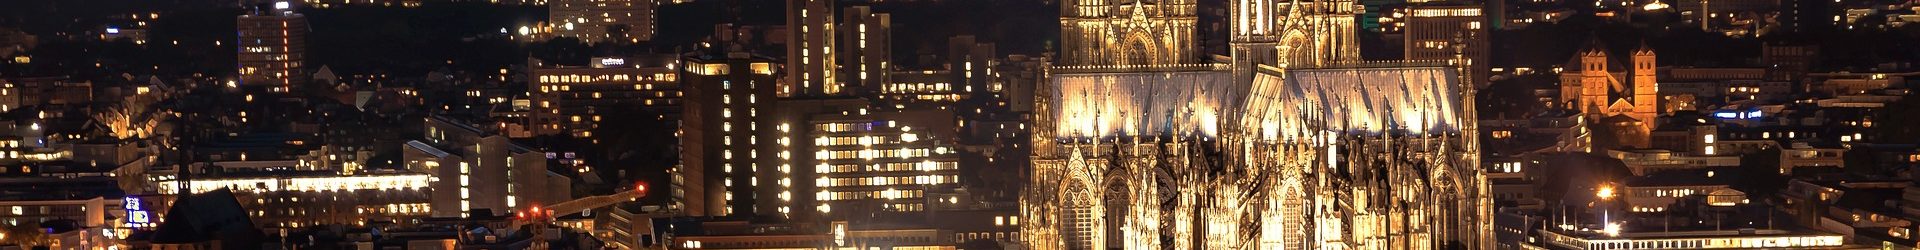 Top Sehenswürdigkeiten in Köln